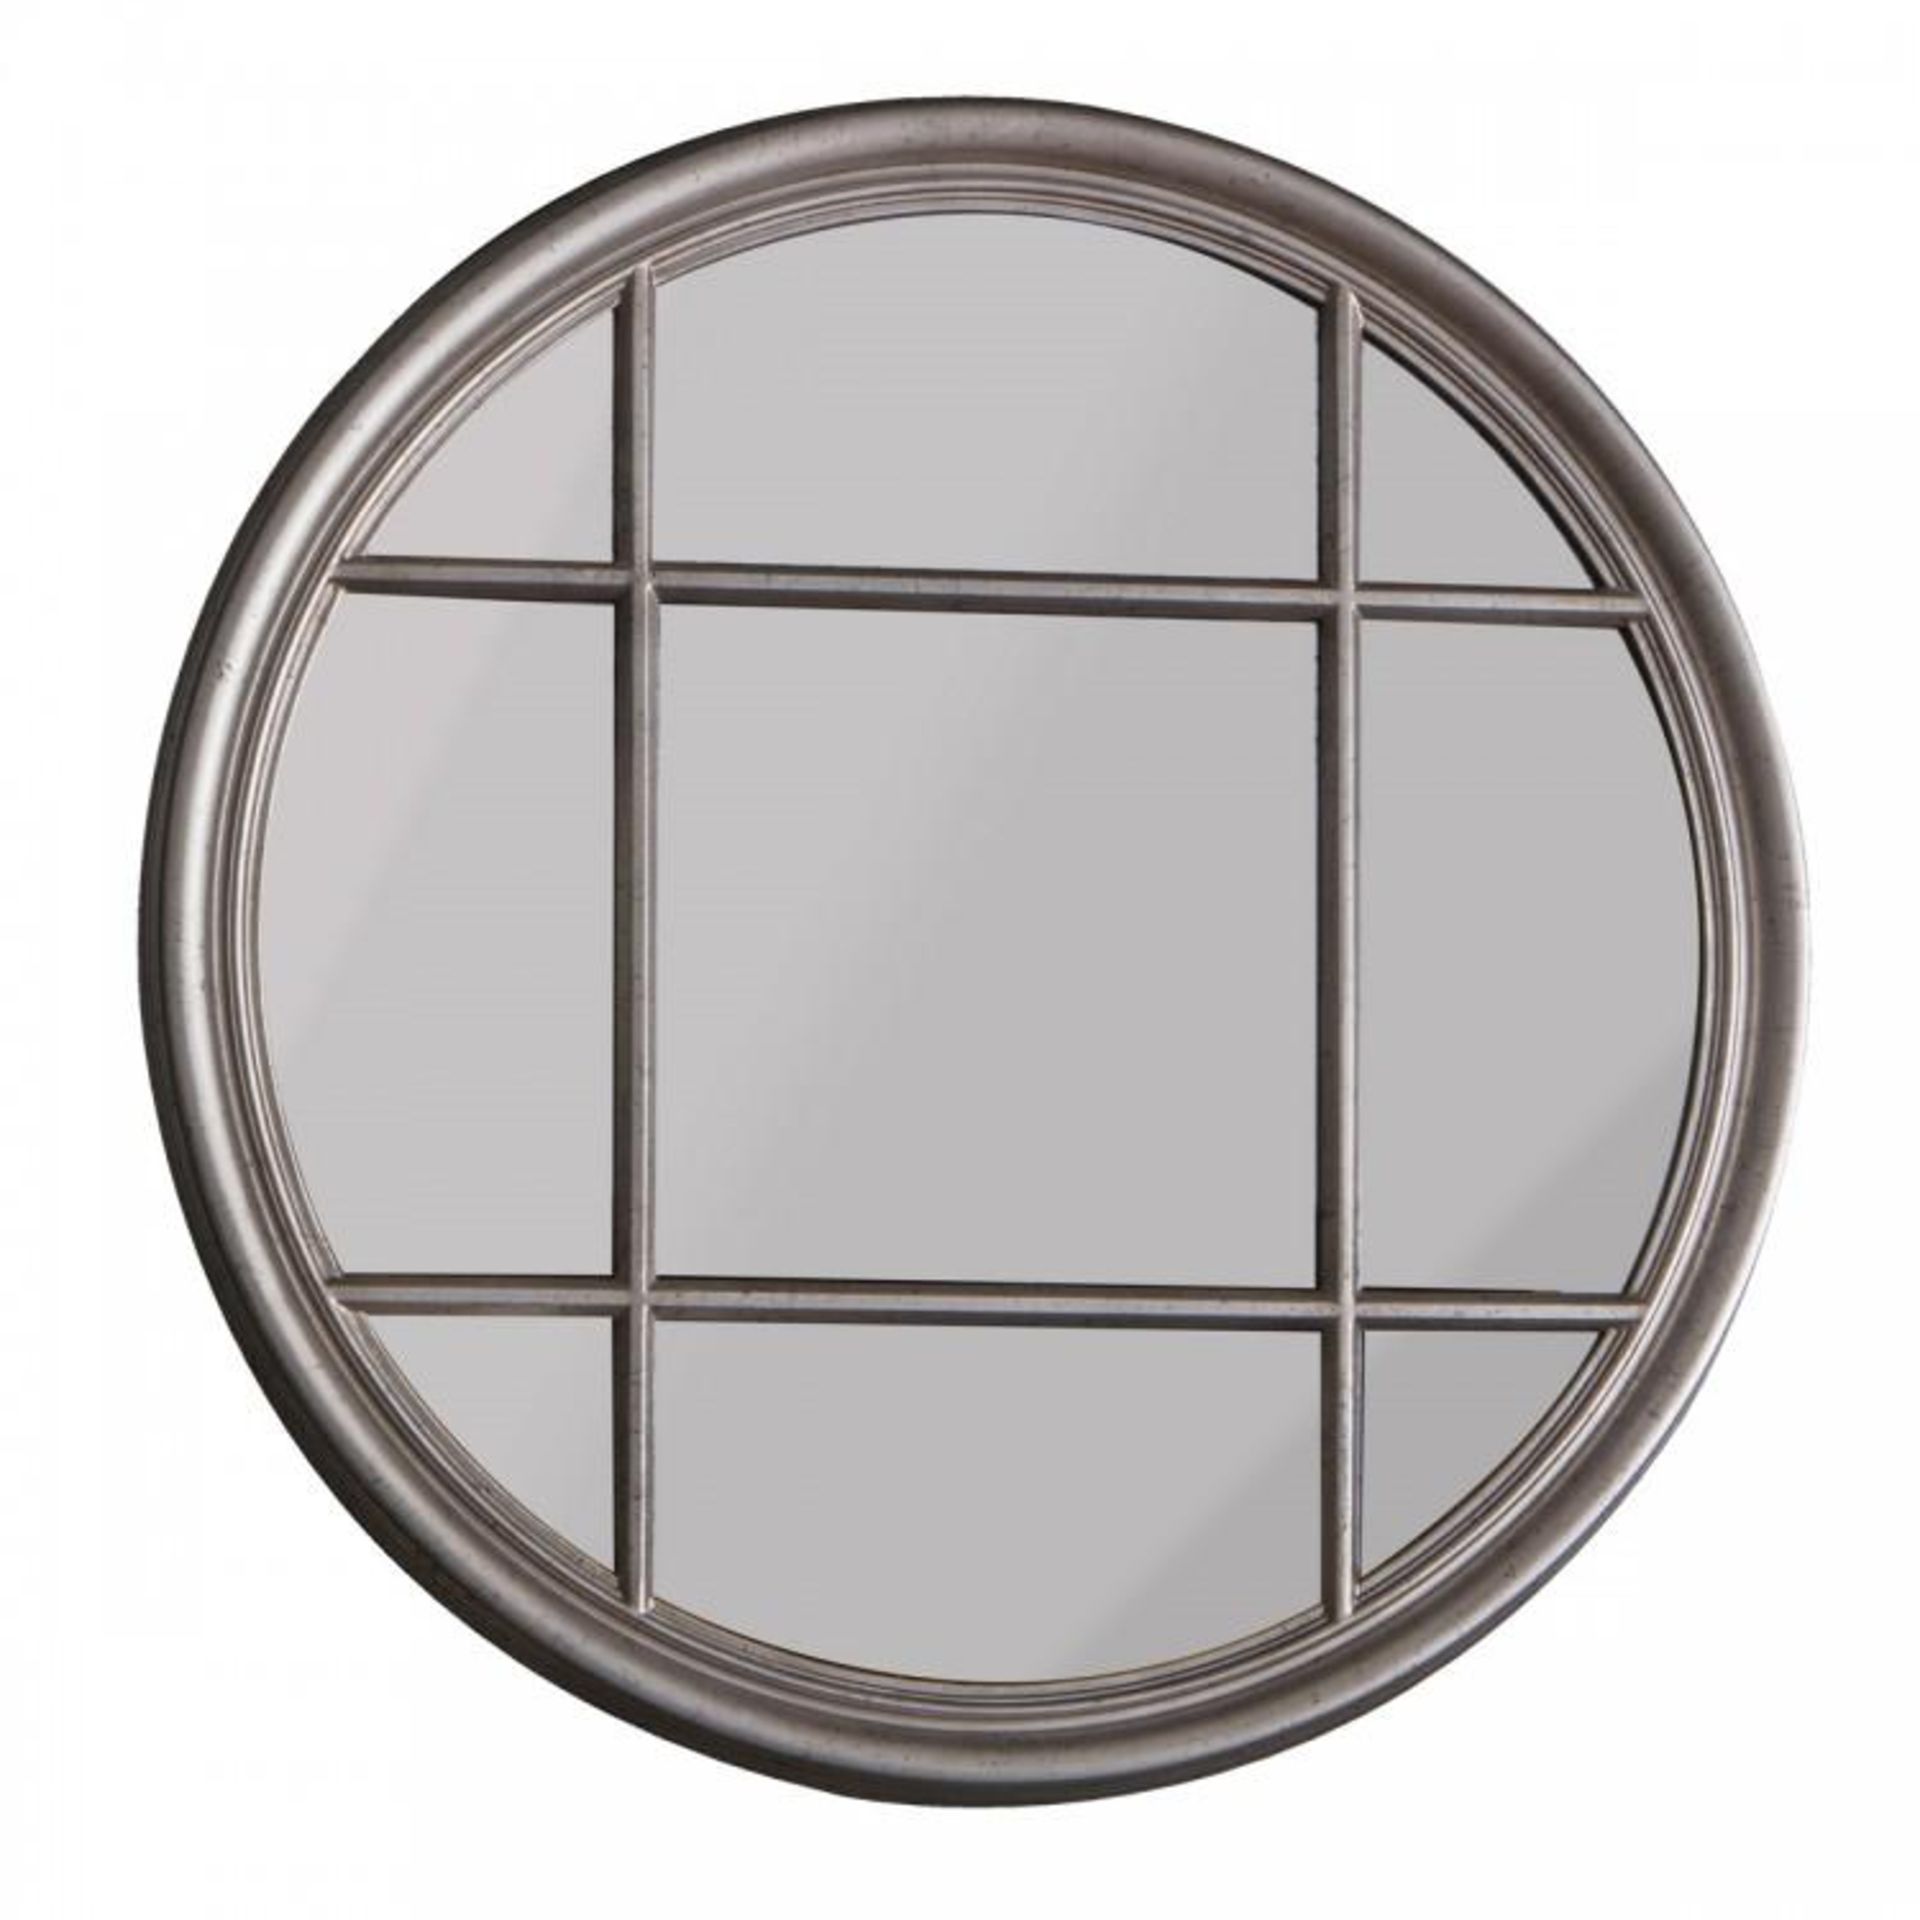 Eccleston Round Mirror Silver 1000 x 1000mm